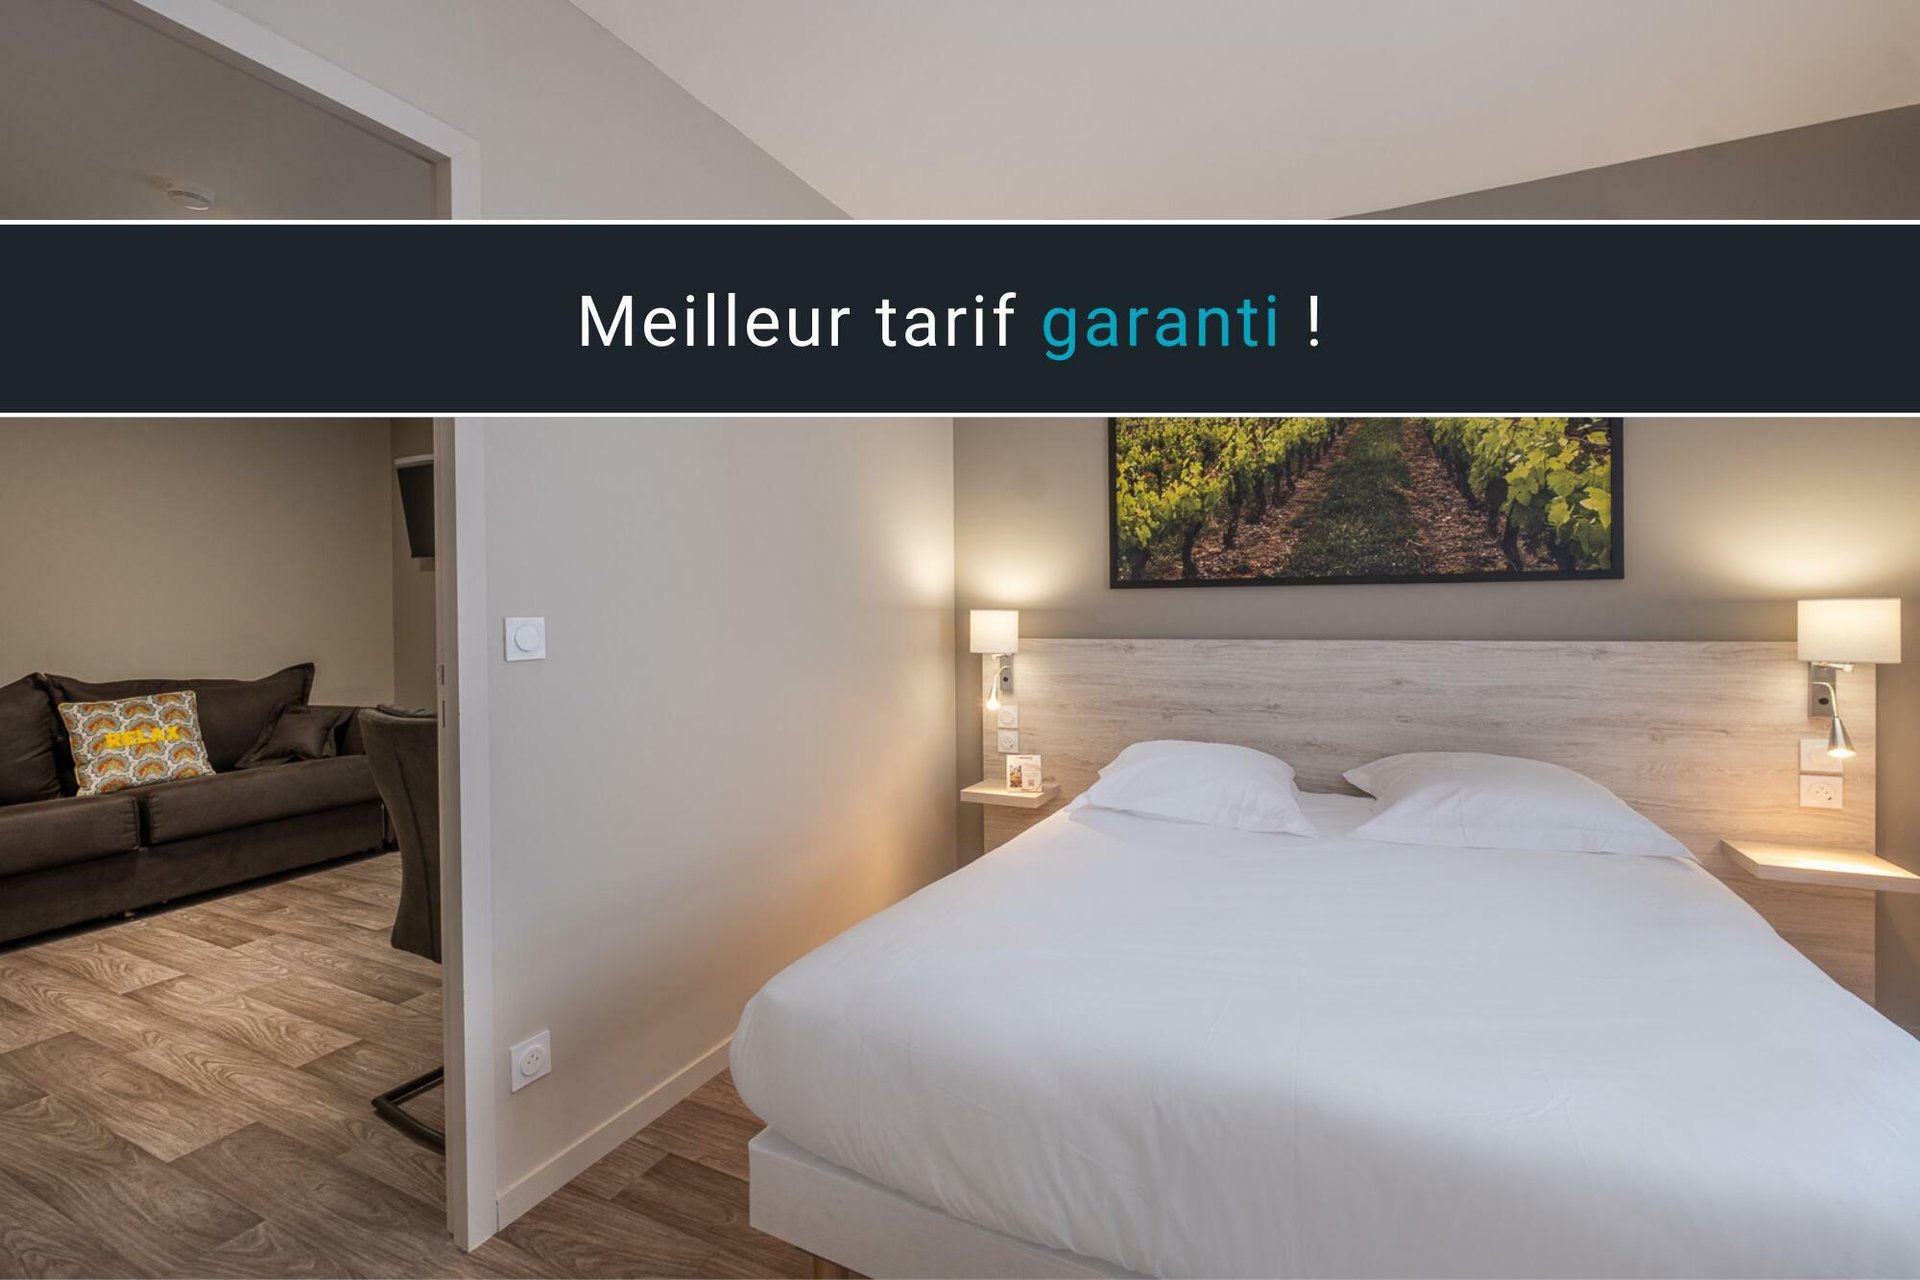 Hotel*** Le Relais des Deux Mers | Lot-et-Garonne | Evening Stopover offer | Business customers